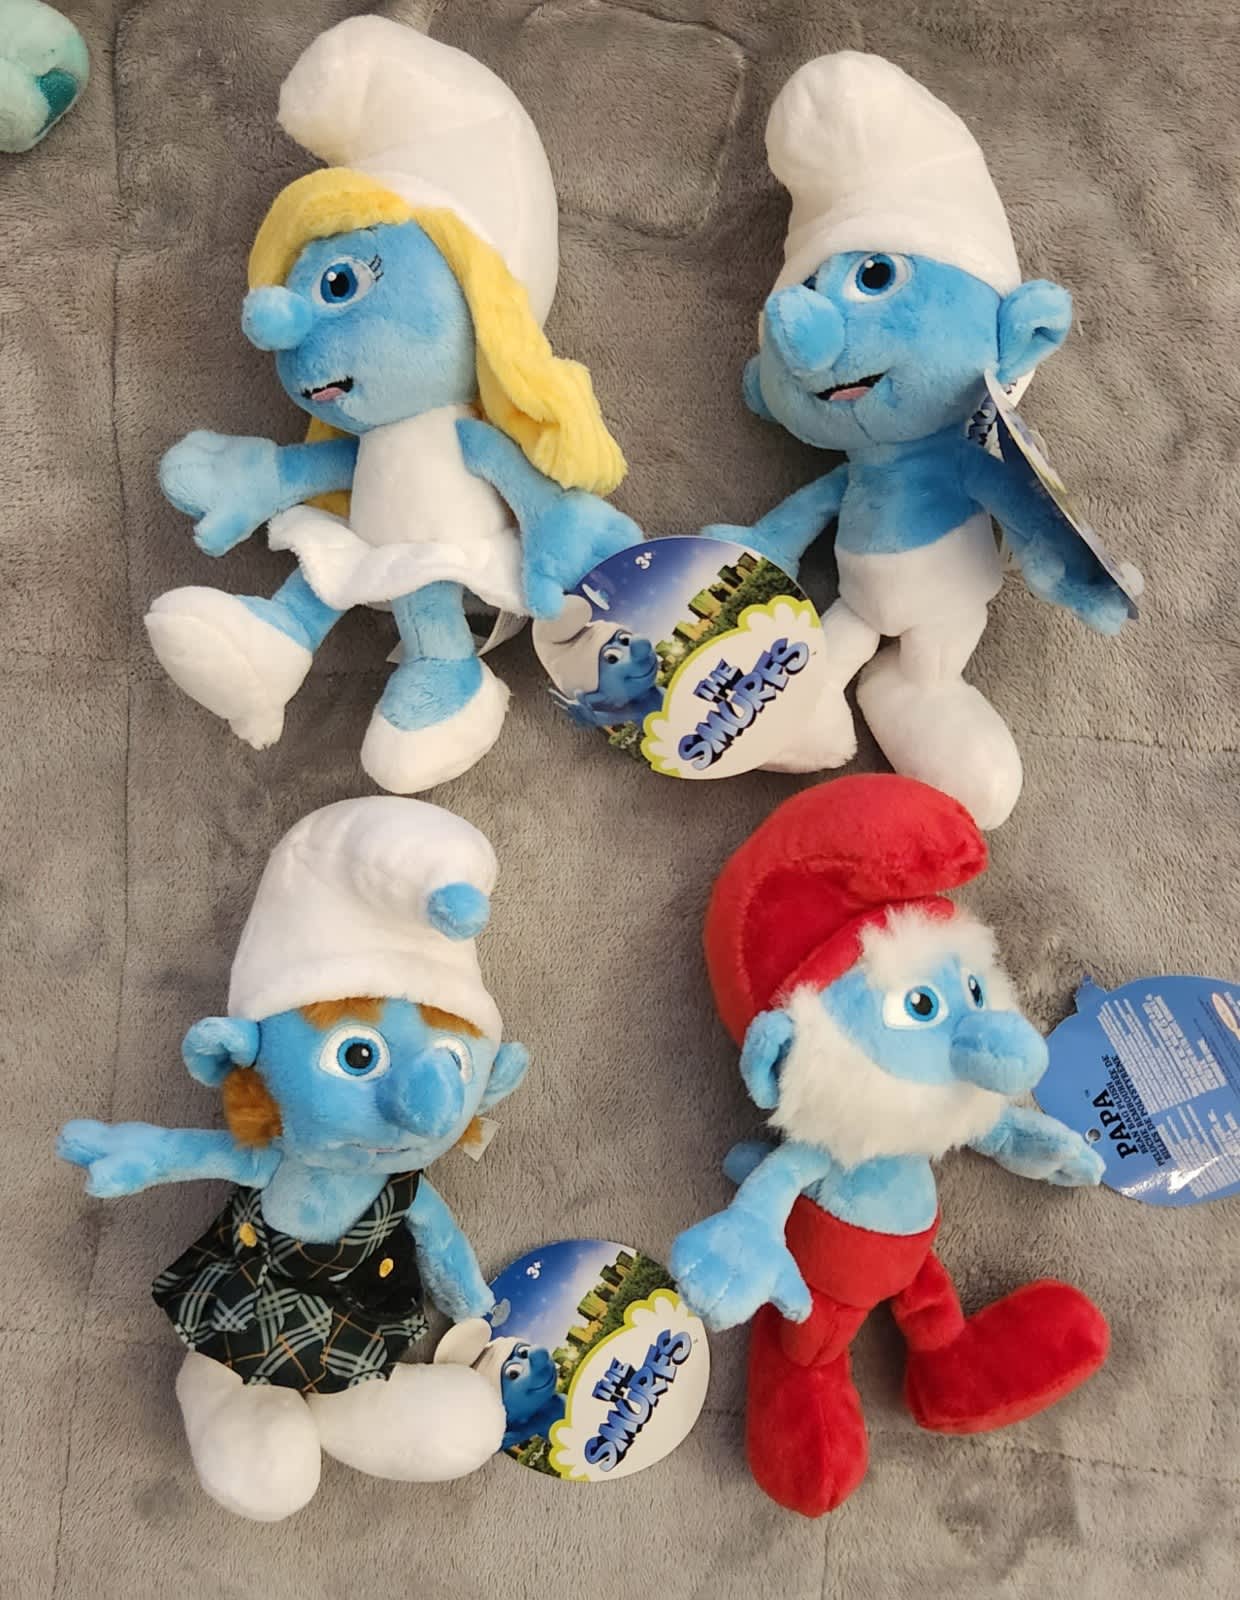 Smurfs Soft Plush Toys - 3 Assorted (20cm)